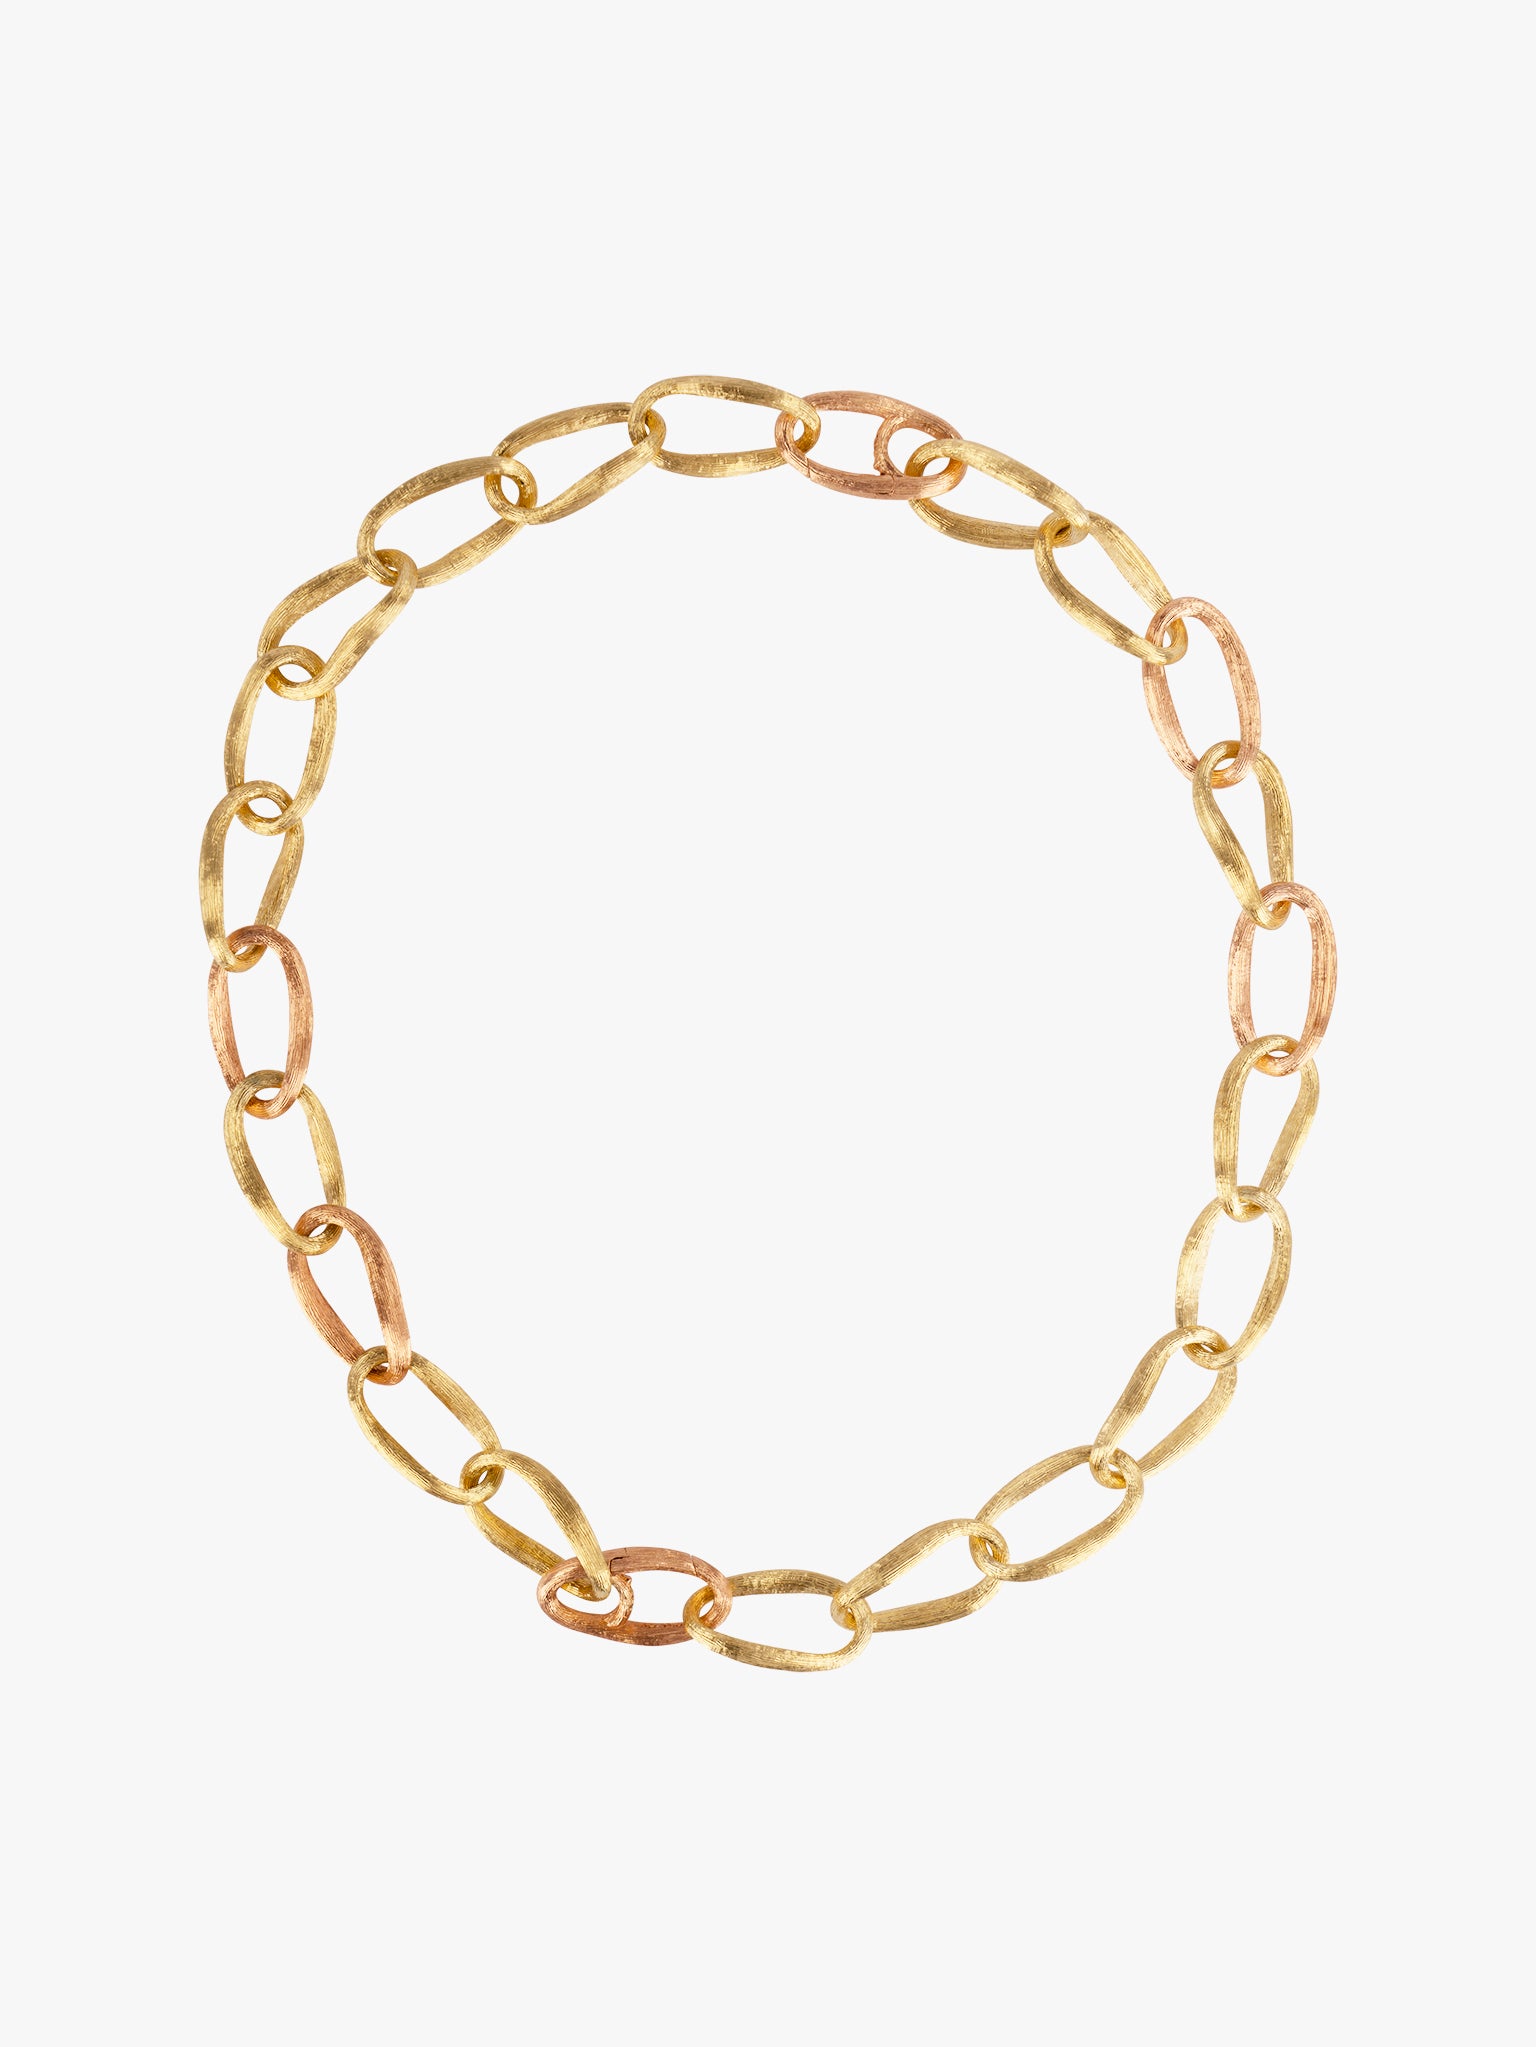 Love chain necklace by OLE LYNGGAARD COPENHAGEN